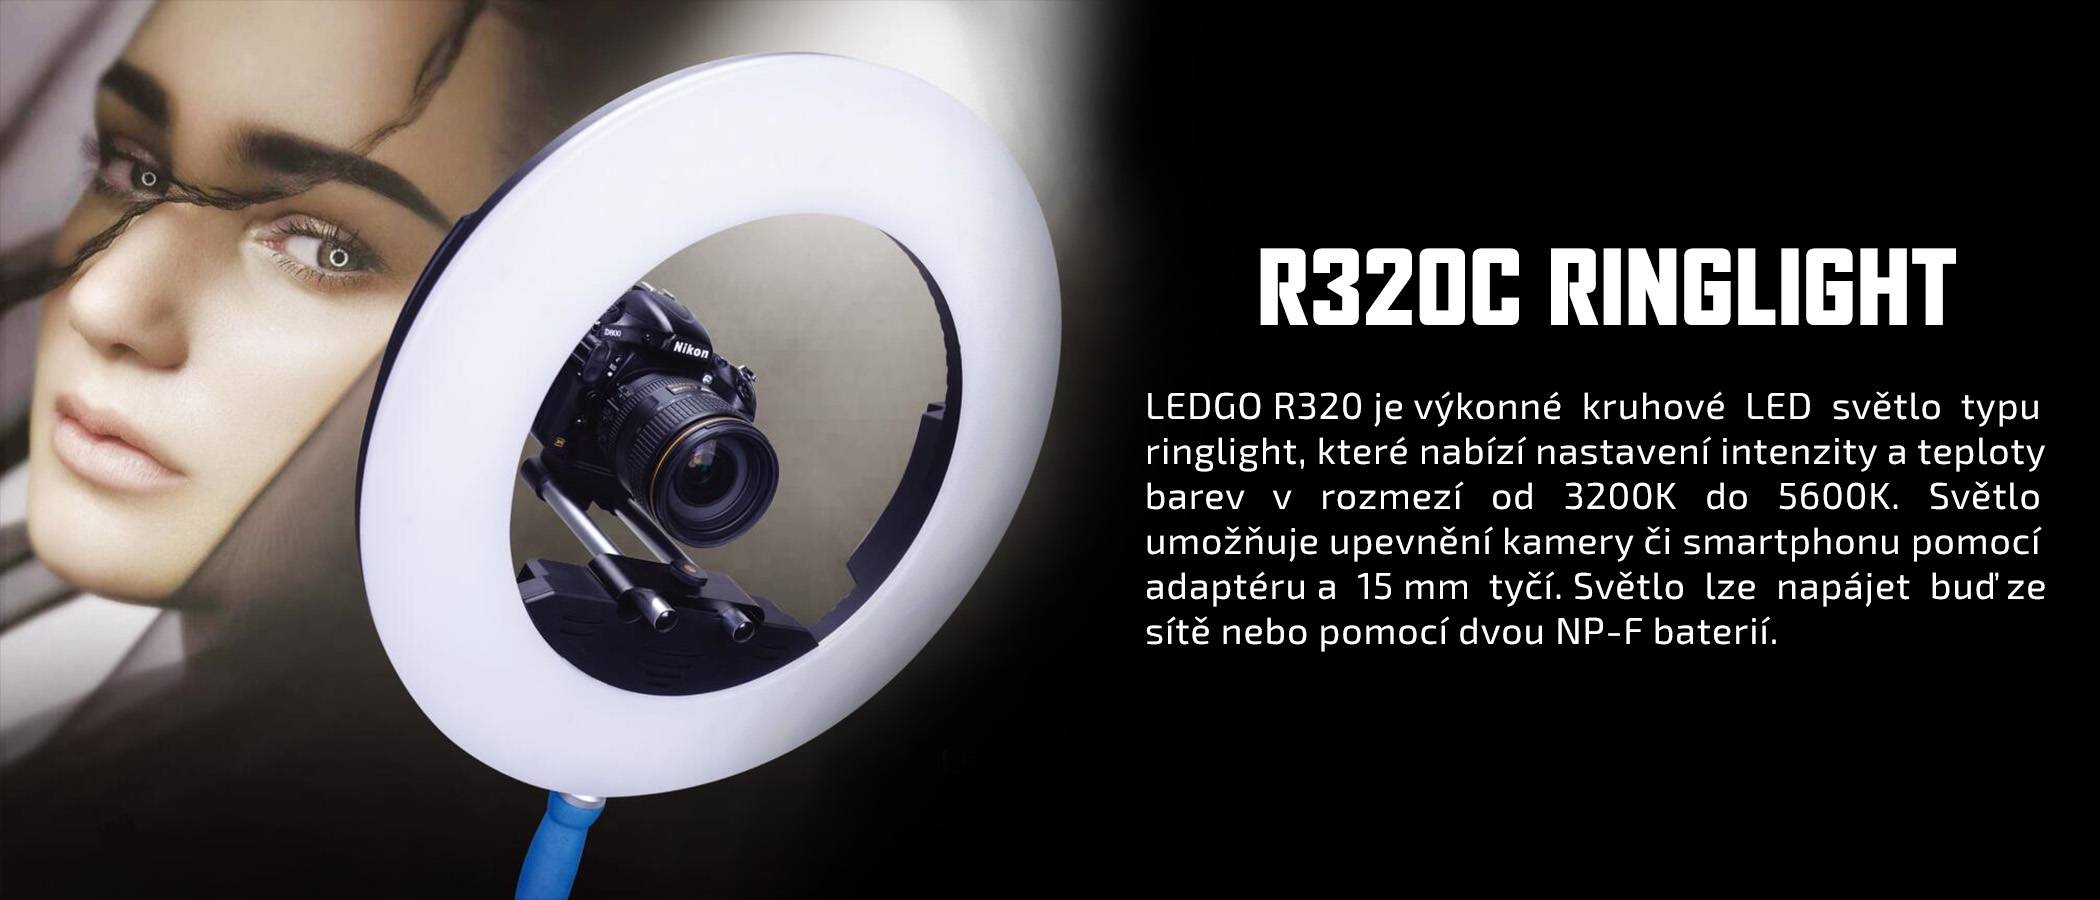 film-technika-ledgo-ringlight-R320c